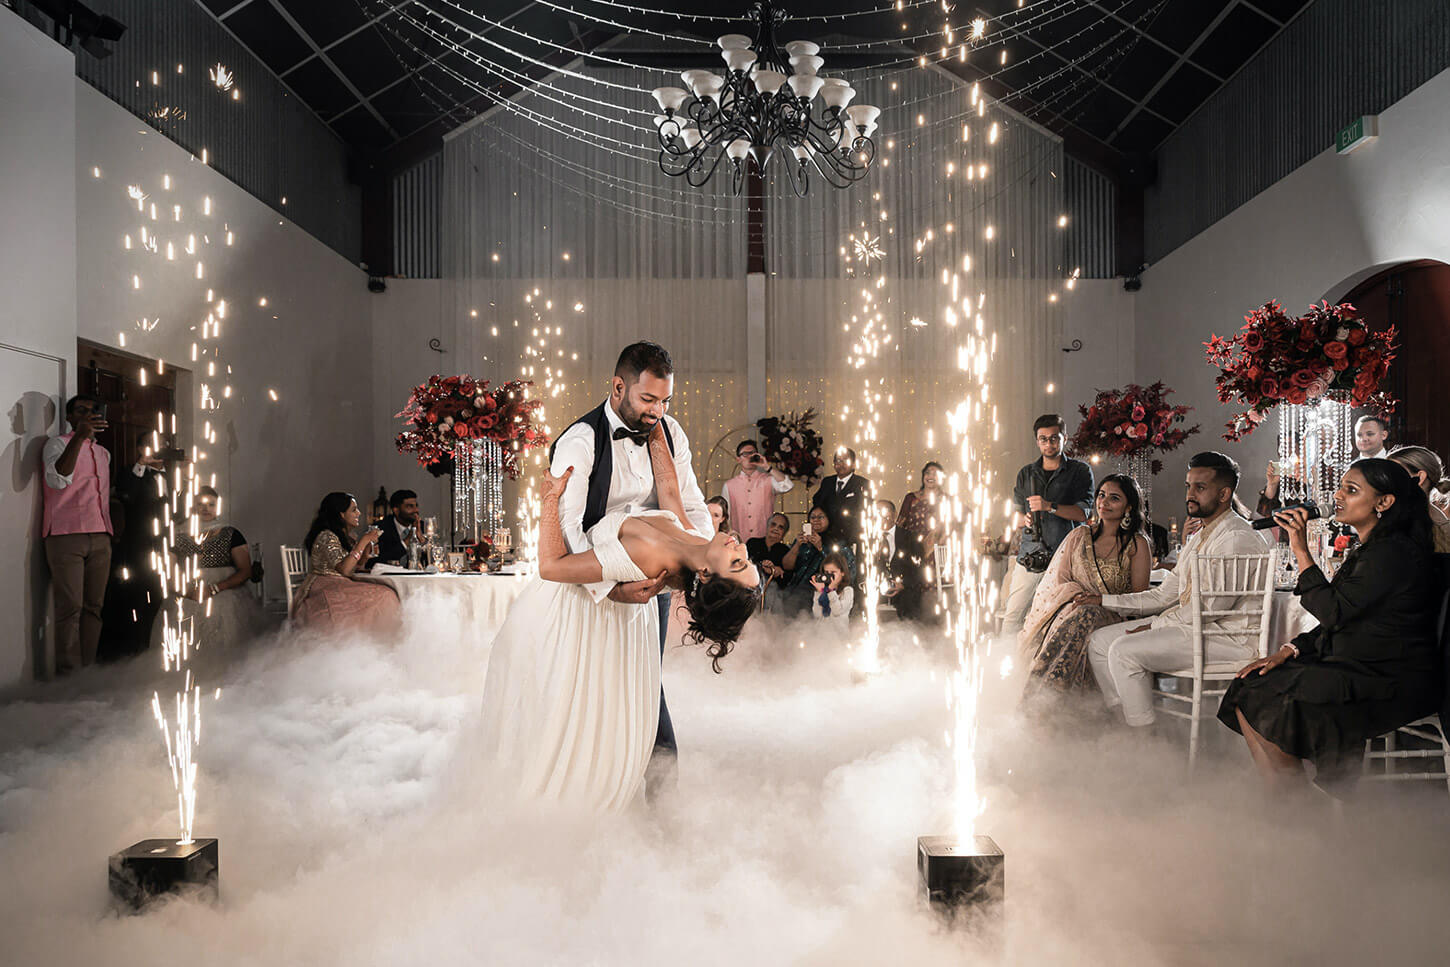 Animazione matrimonio fontane fredde fumo basso bolle con fumo